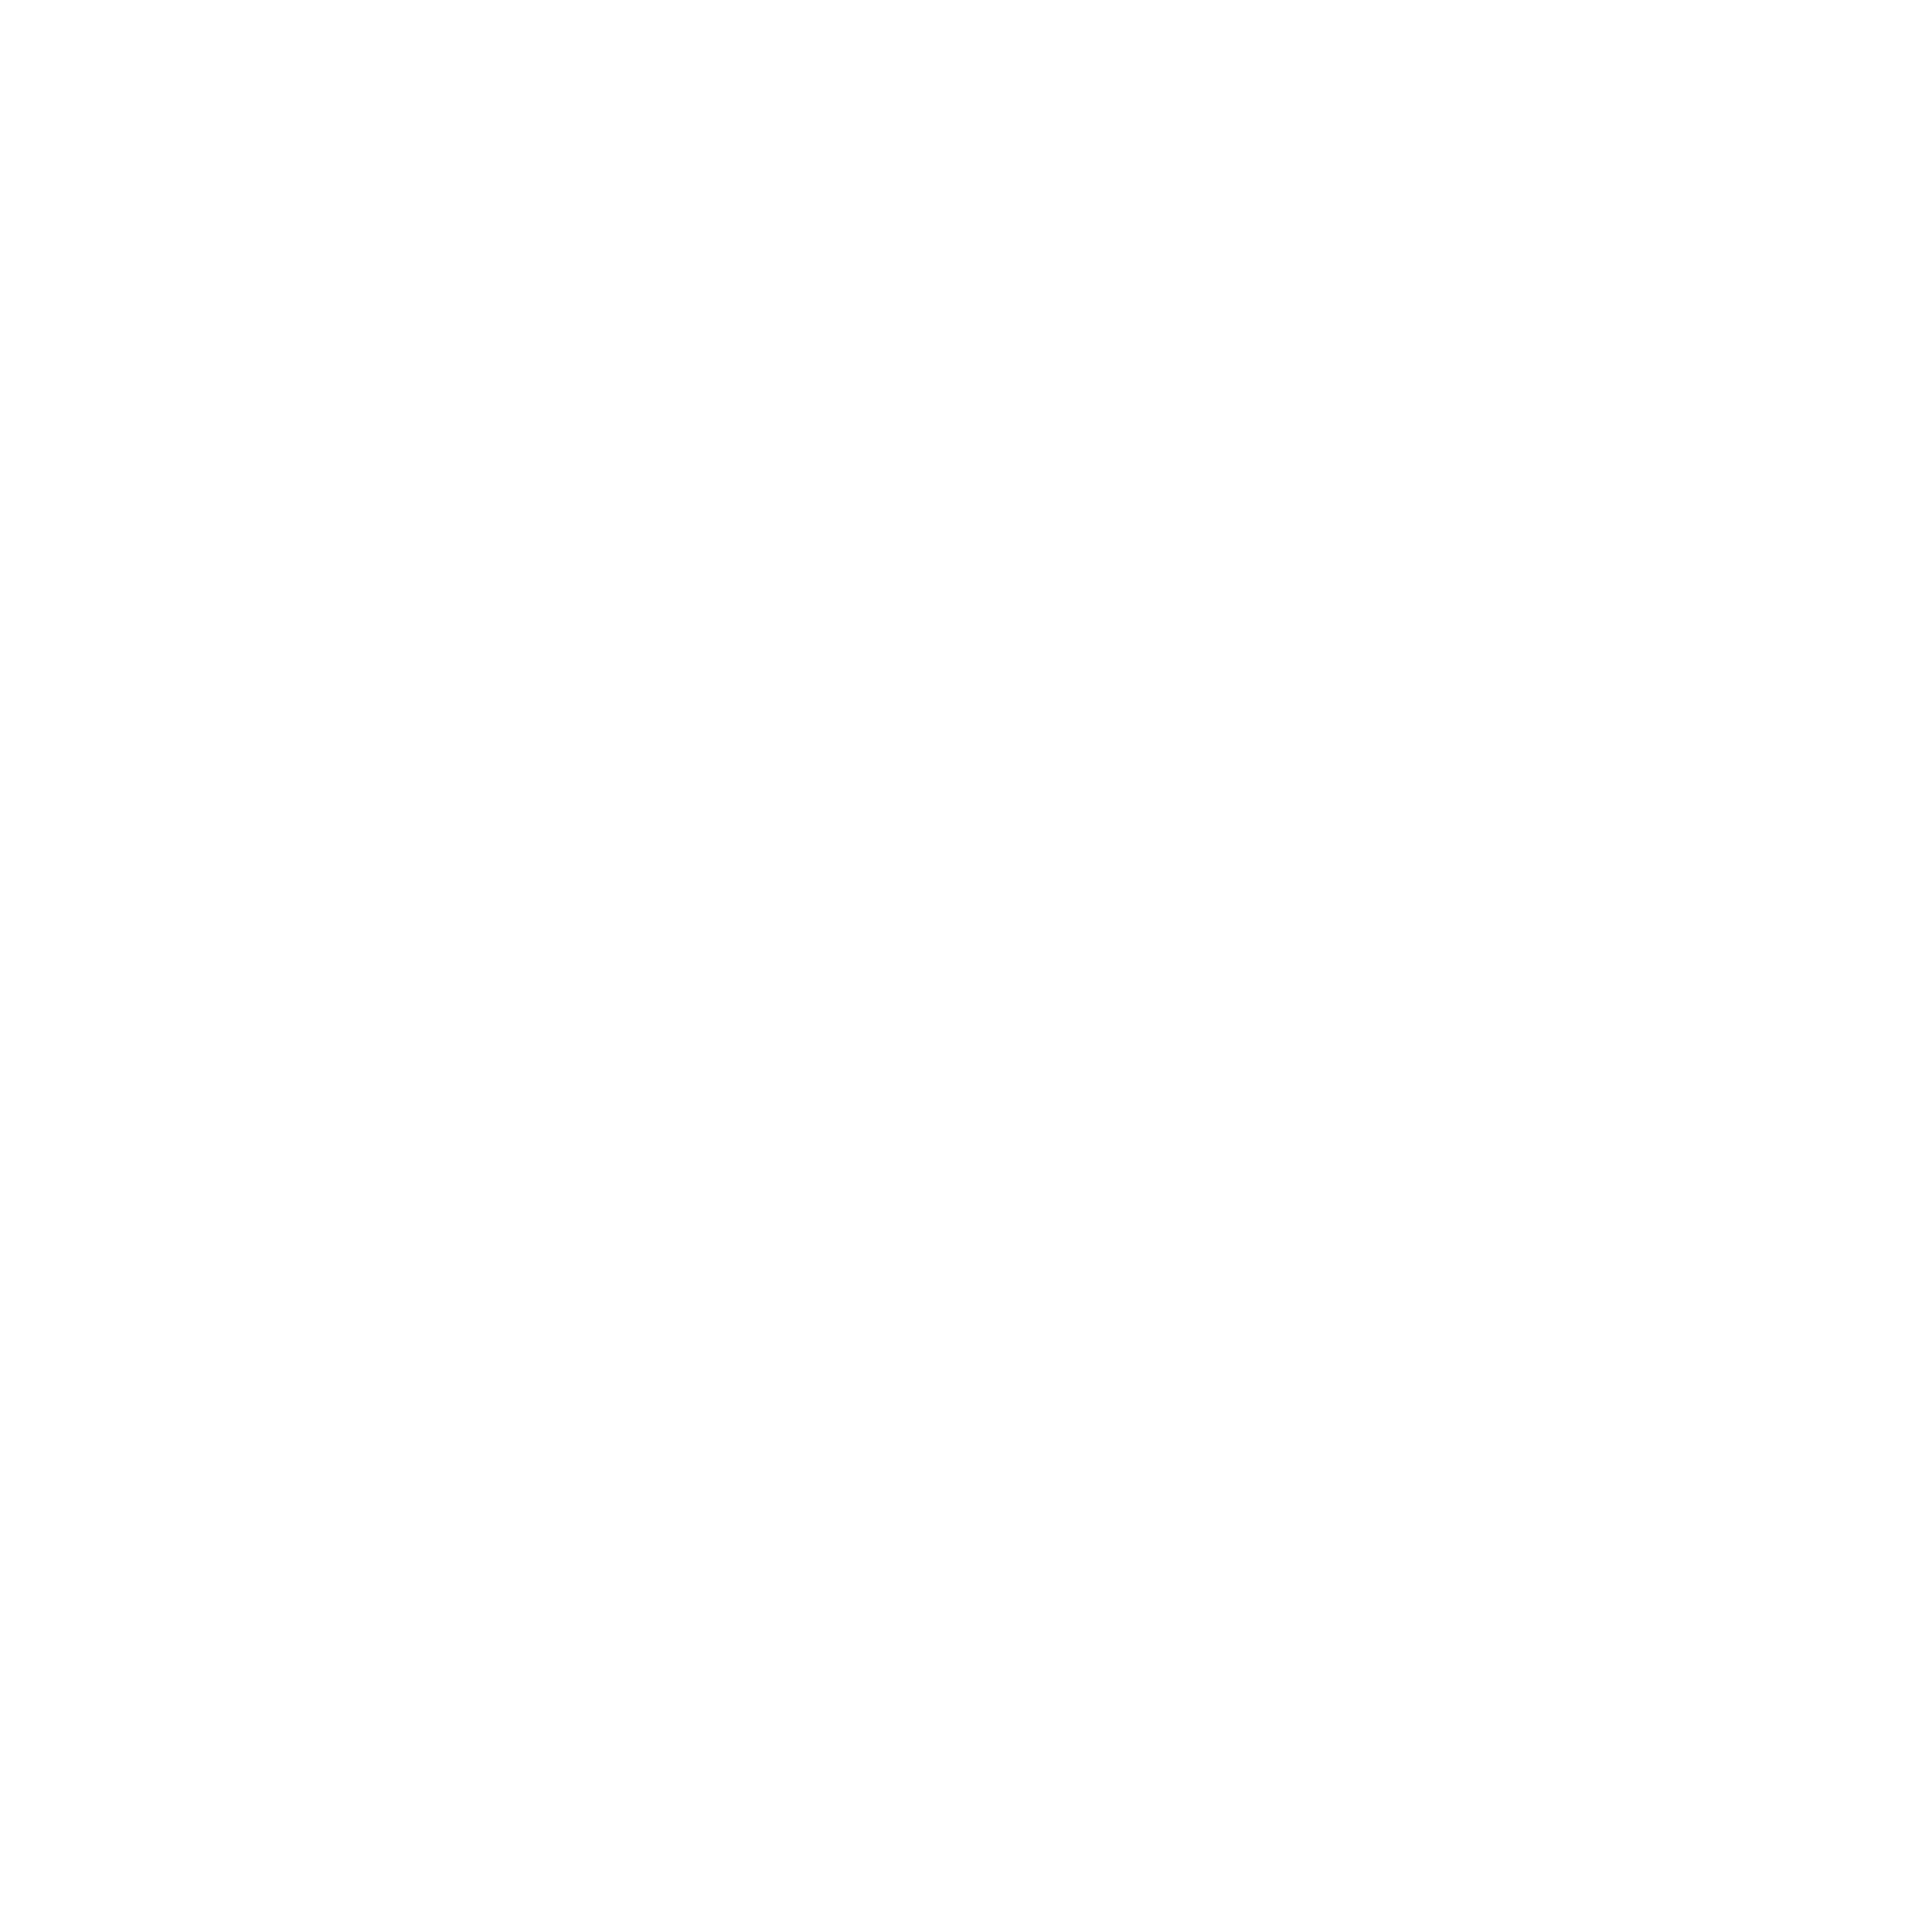 The Sagittarius Constellation